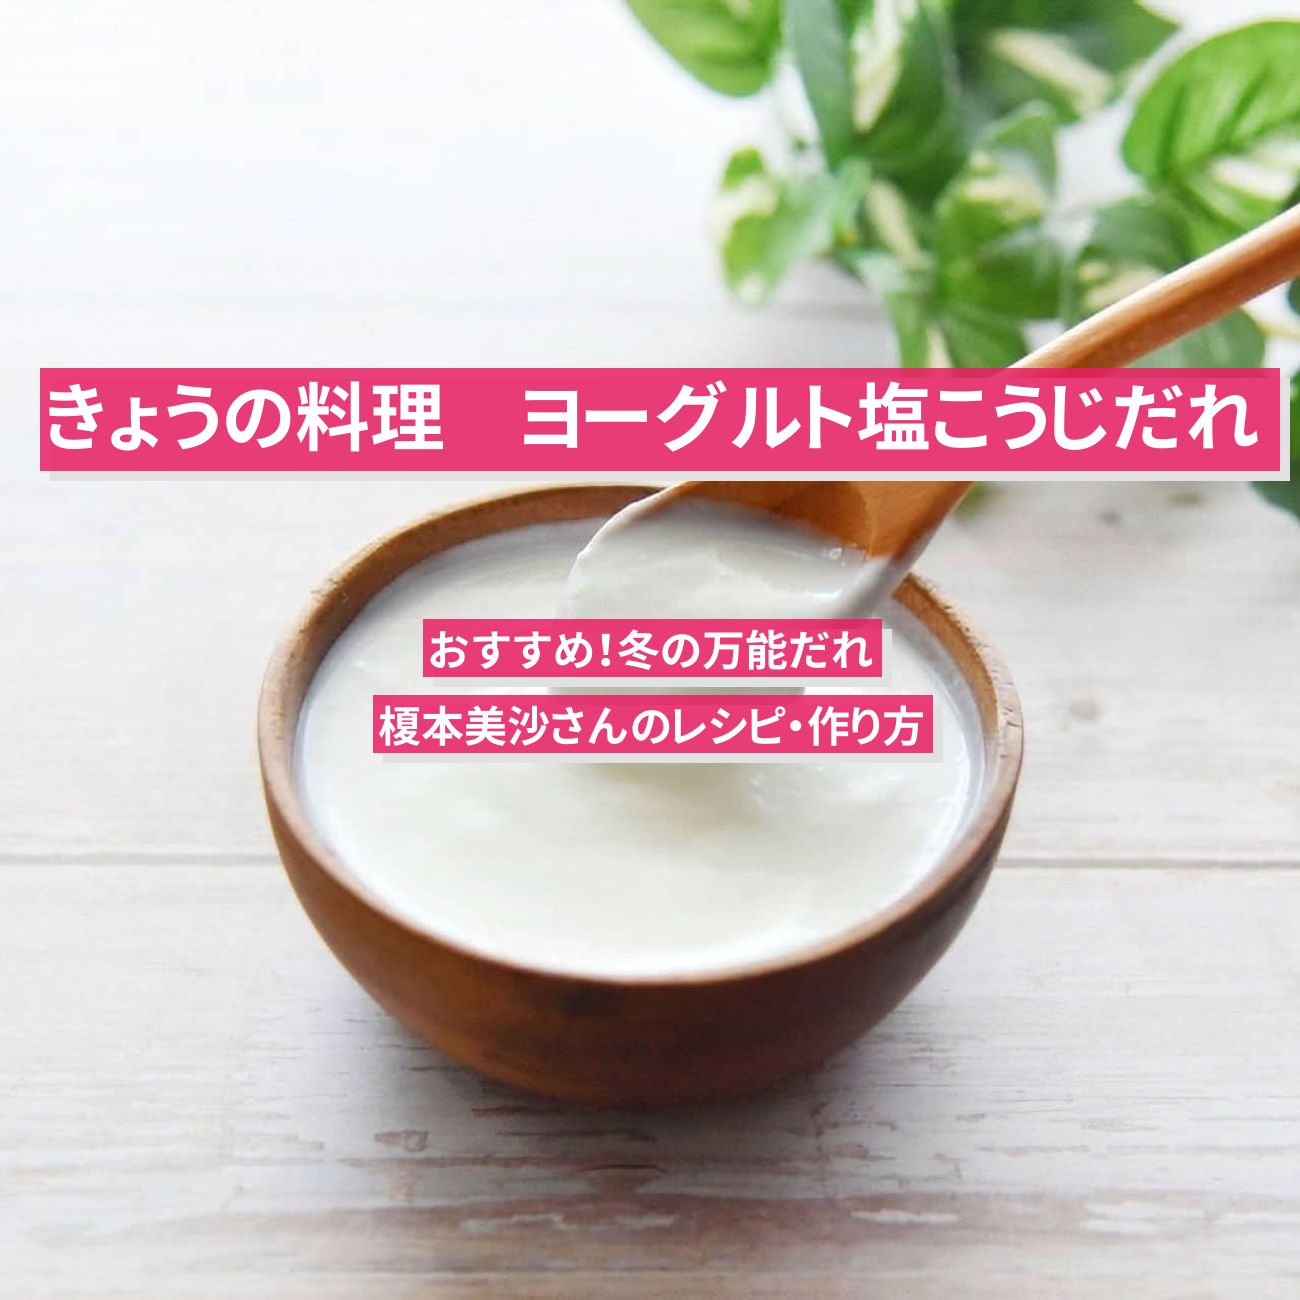 【きょうの料理】『ヨーグルト塩こうじだれ』榎本美沙さんのレシピ・作り方